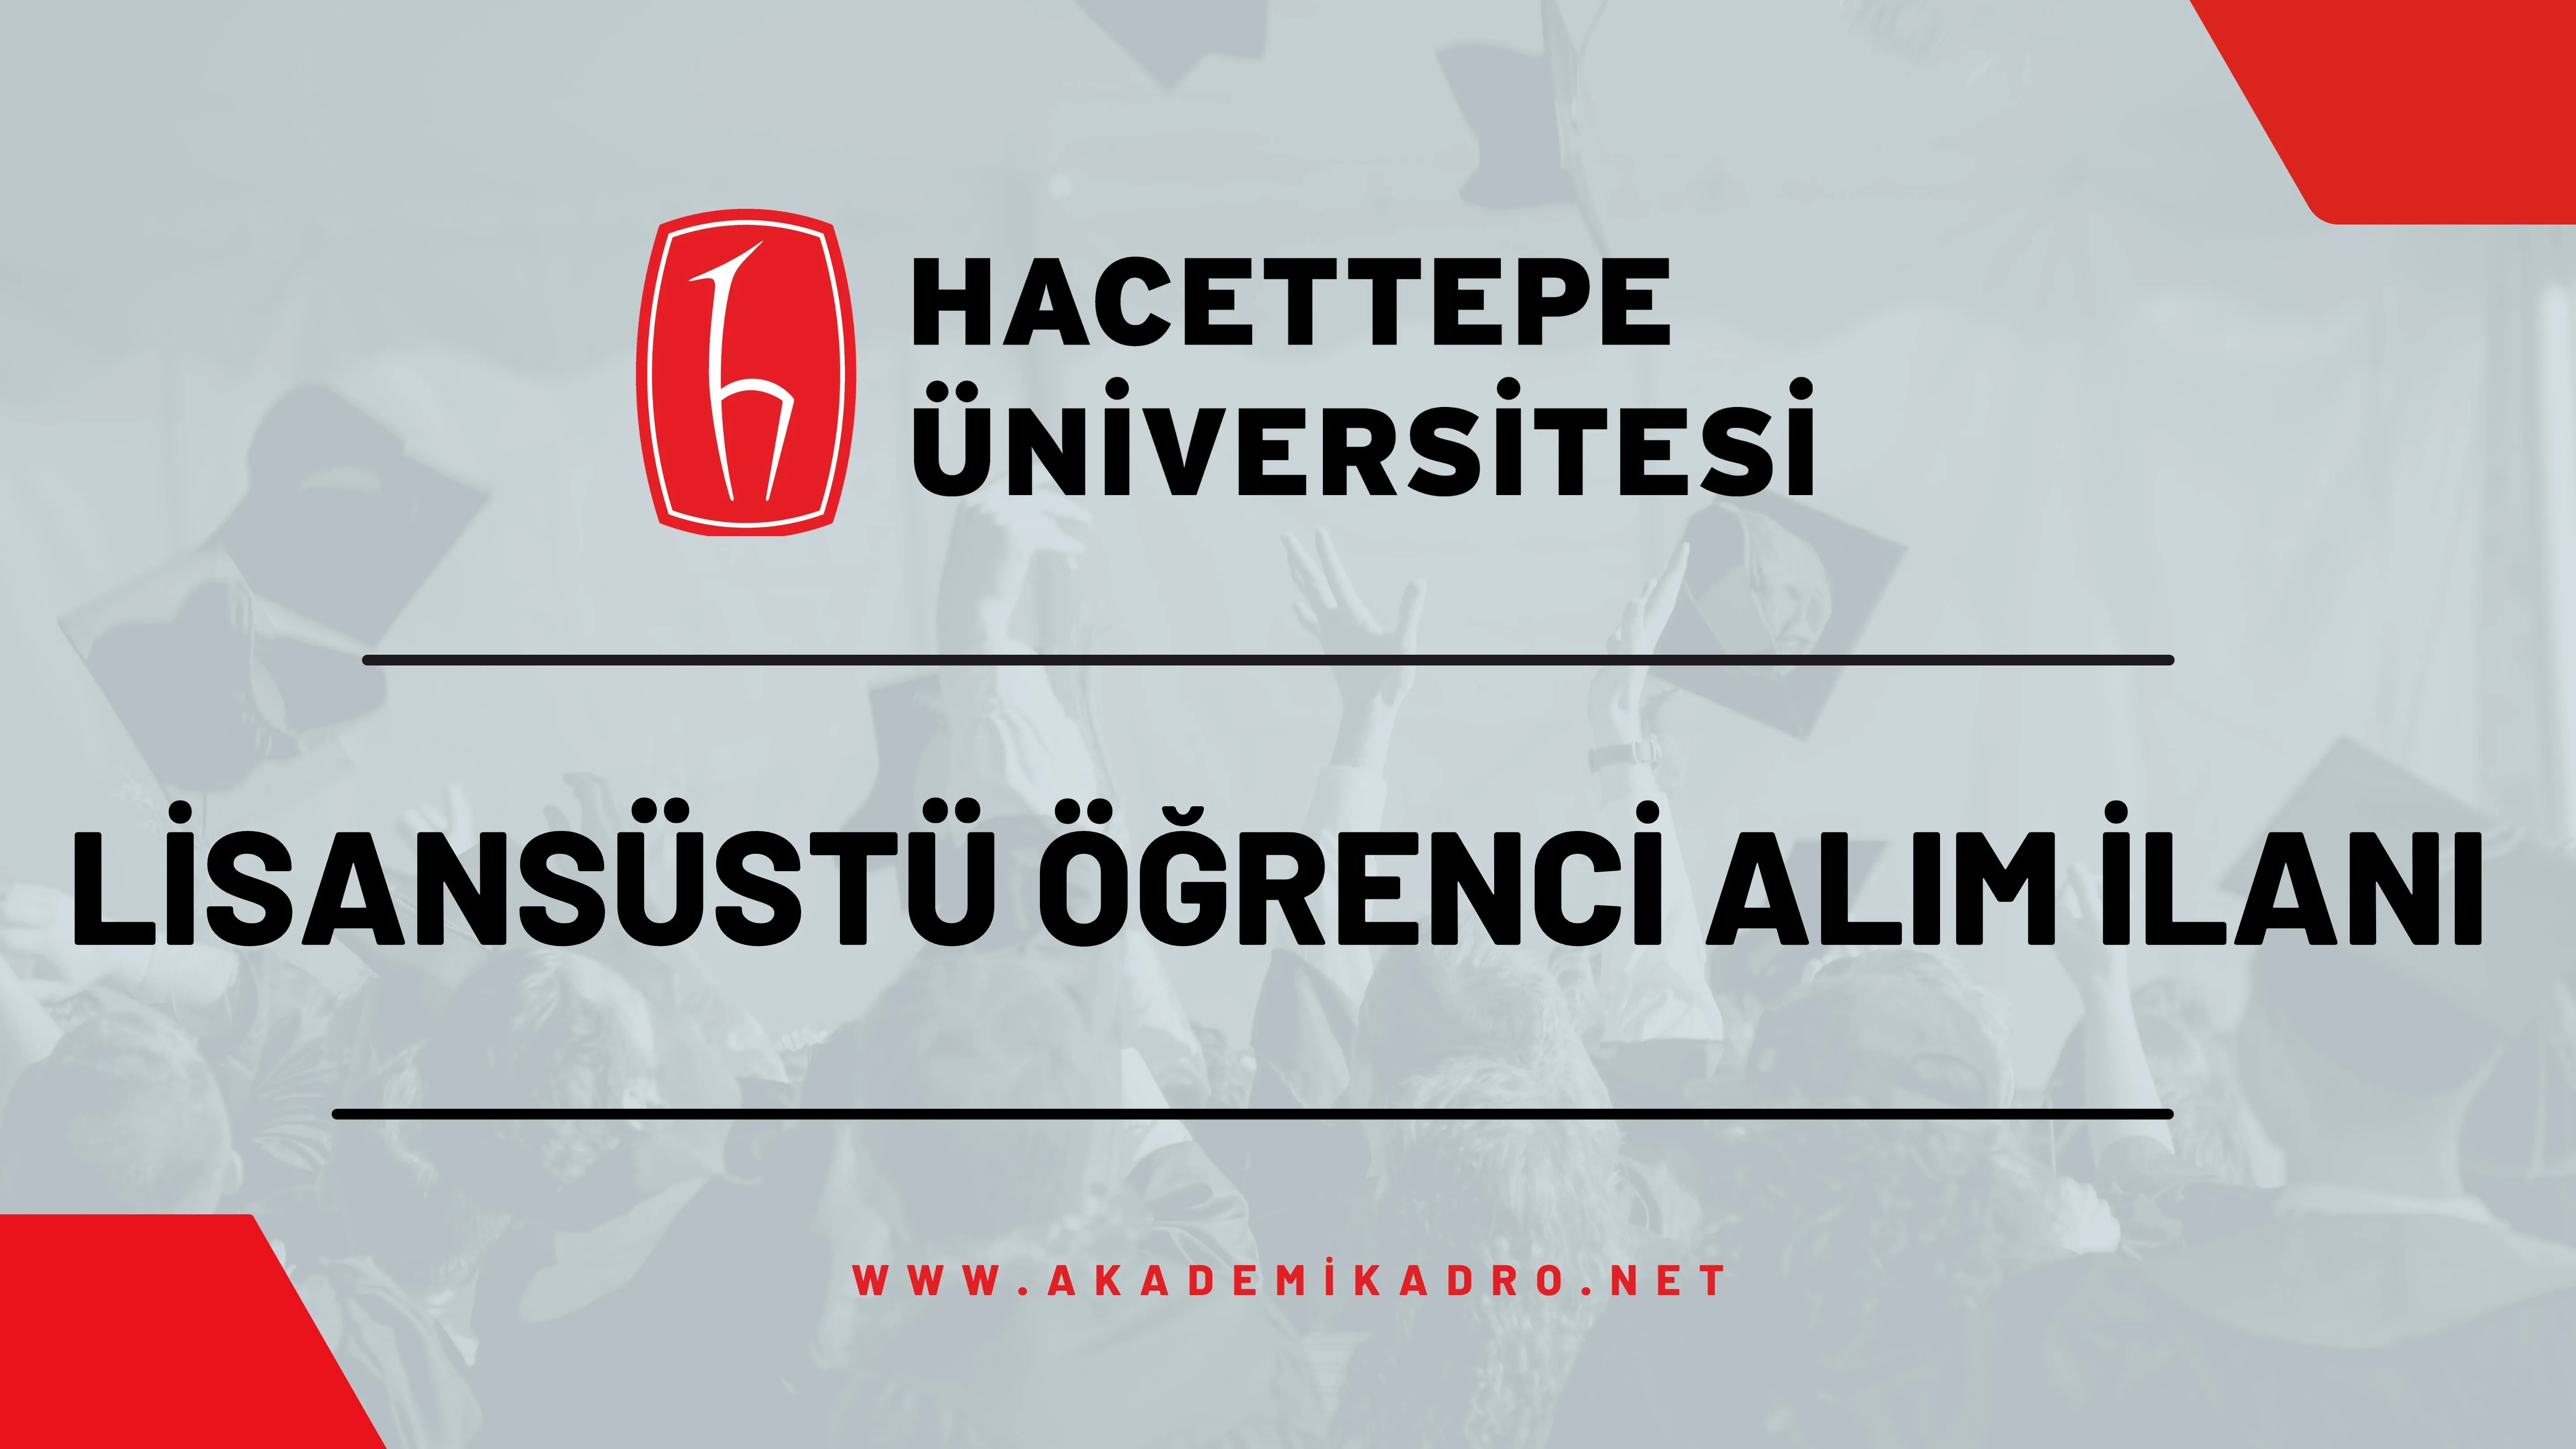 Hacettepe Üniversitesi 2022-2023 bahar döneminde lisansüstü programlara öğrenci alacaktır.